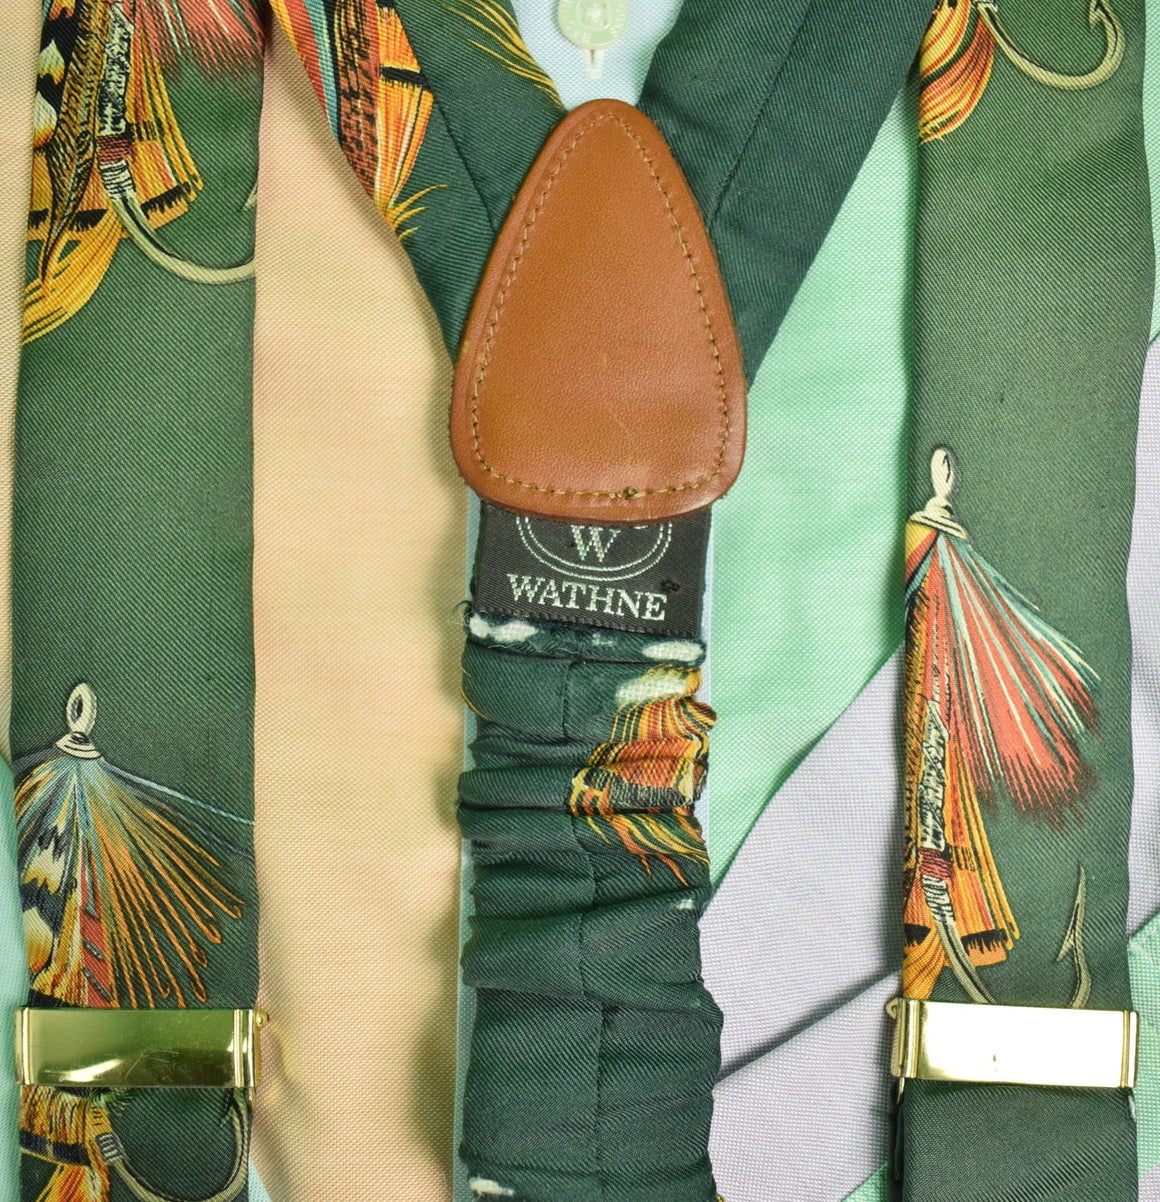 "Wathne Hunter Green Trout Fly Silk Braces"